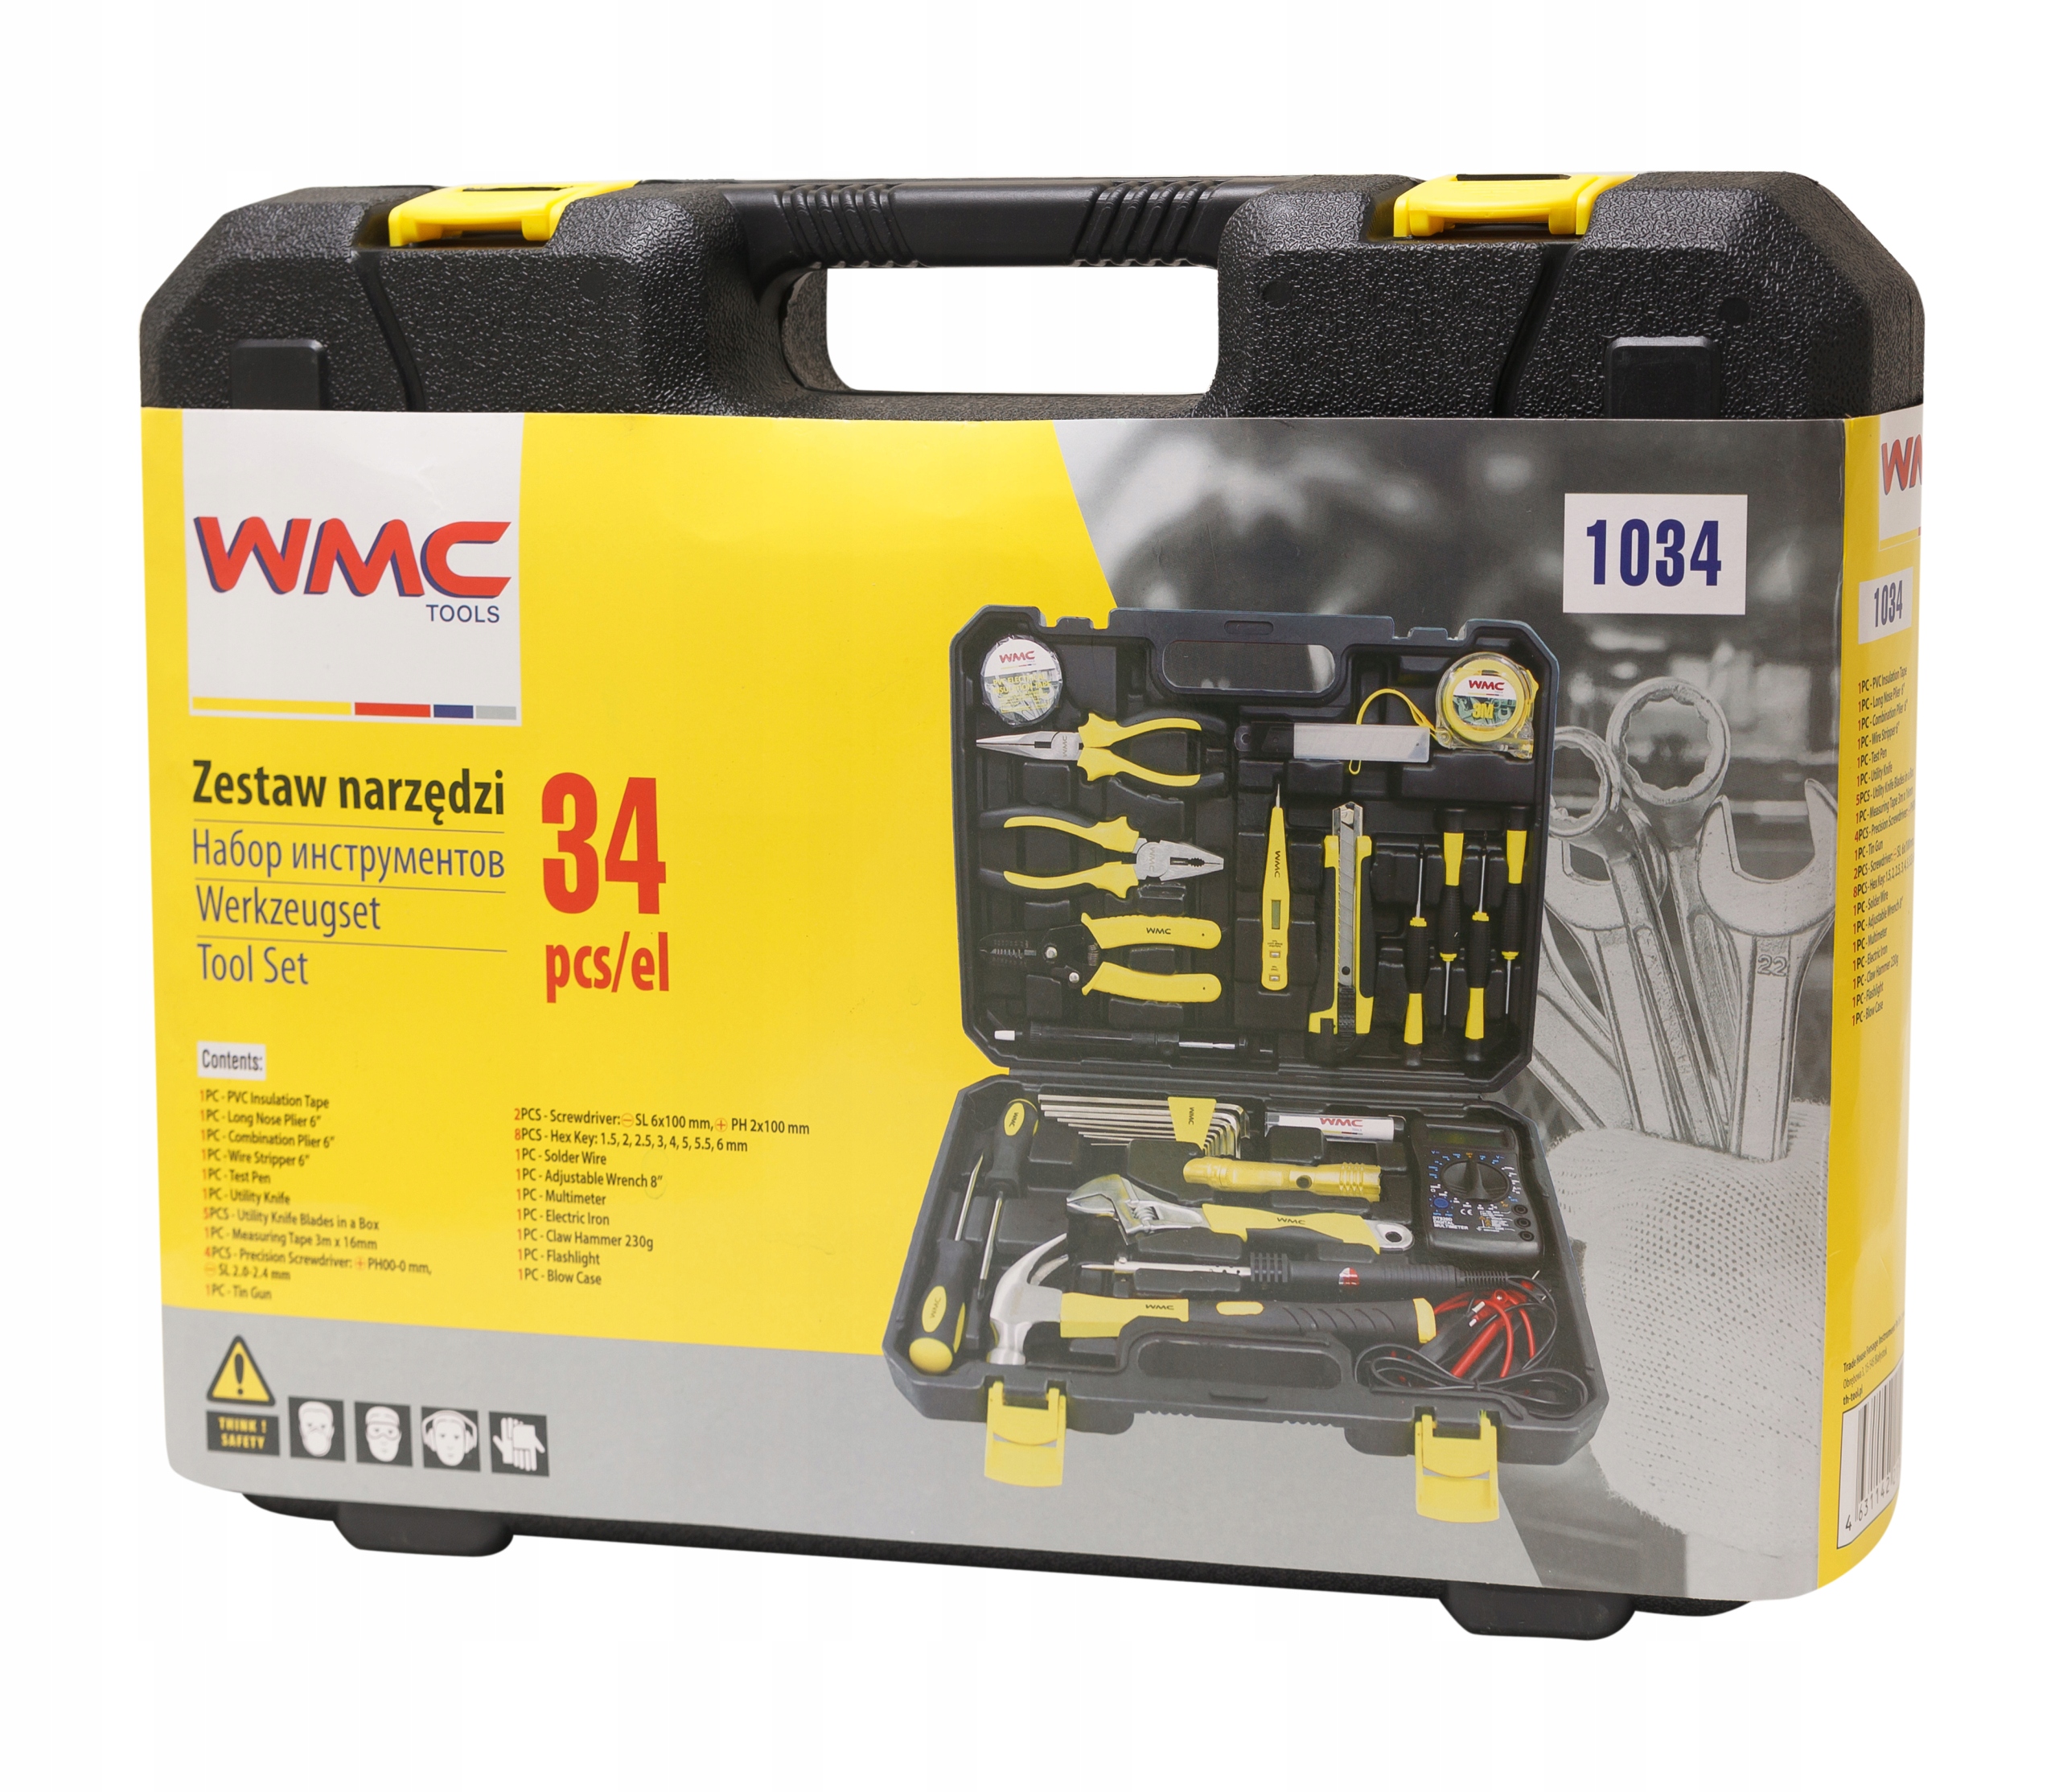 Набор wmc tools. WMC Tools набор инструментов 34пр, для электрика 1034. Набор инструмента для электрика WMC Tools. WMC-1034. Набор инструментов для электрика, 34 предмета WMC Tools 10342-80.